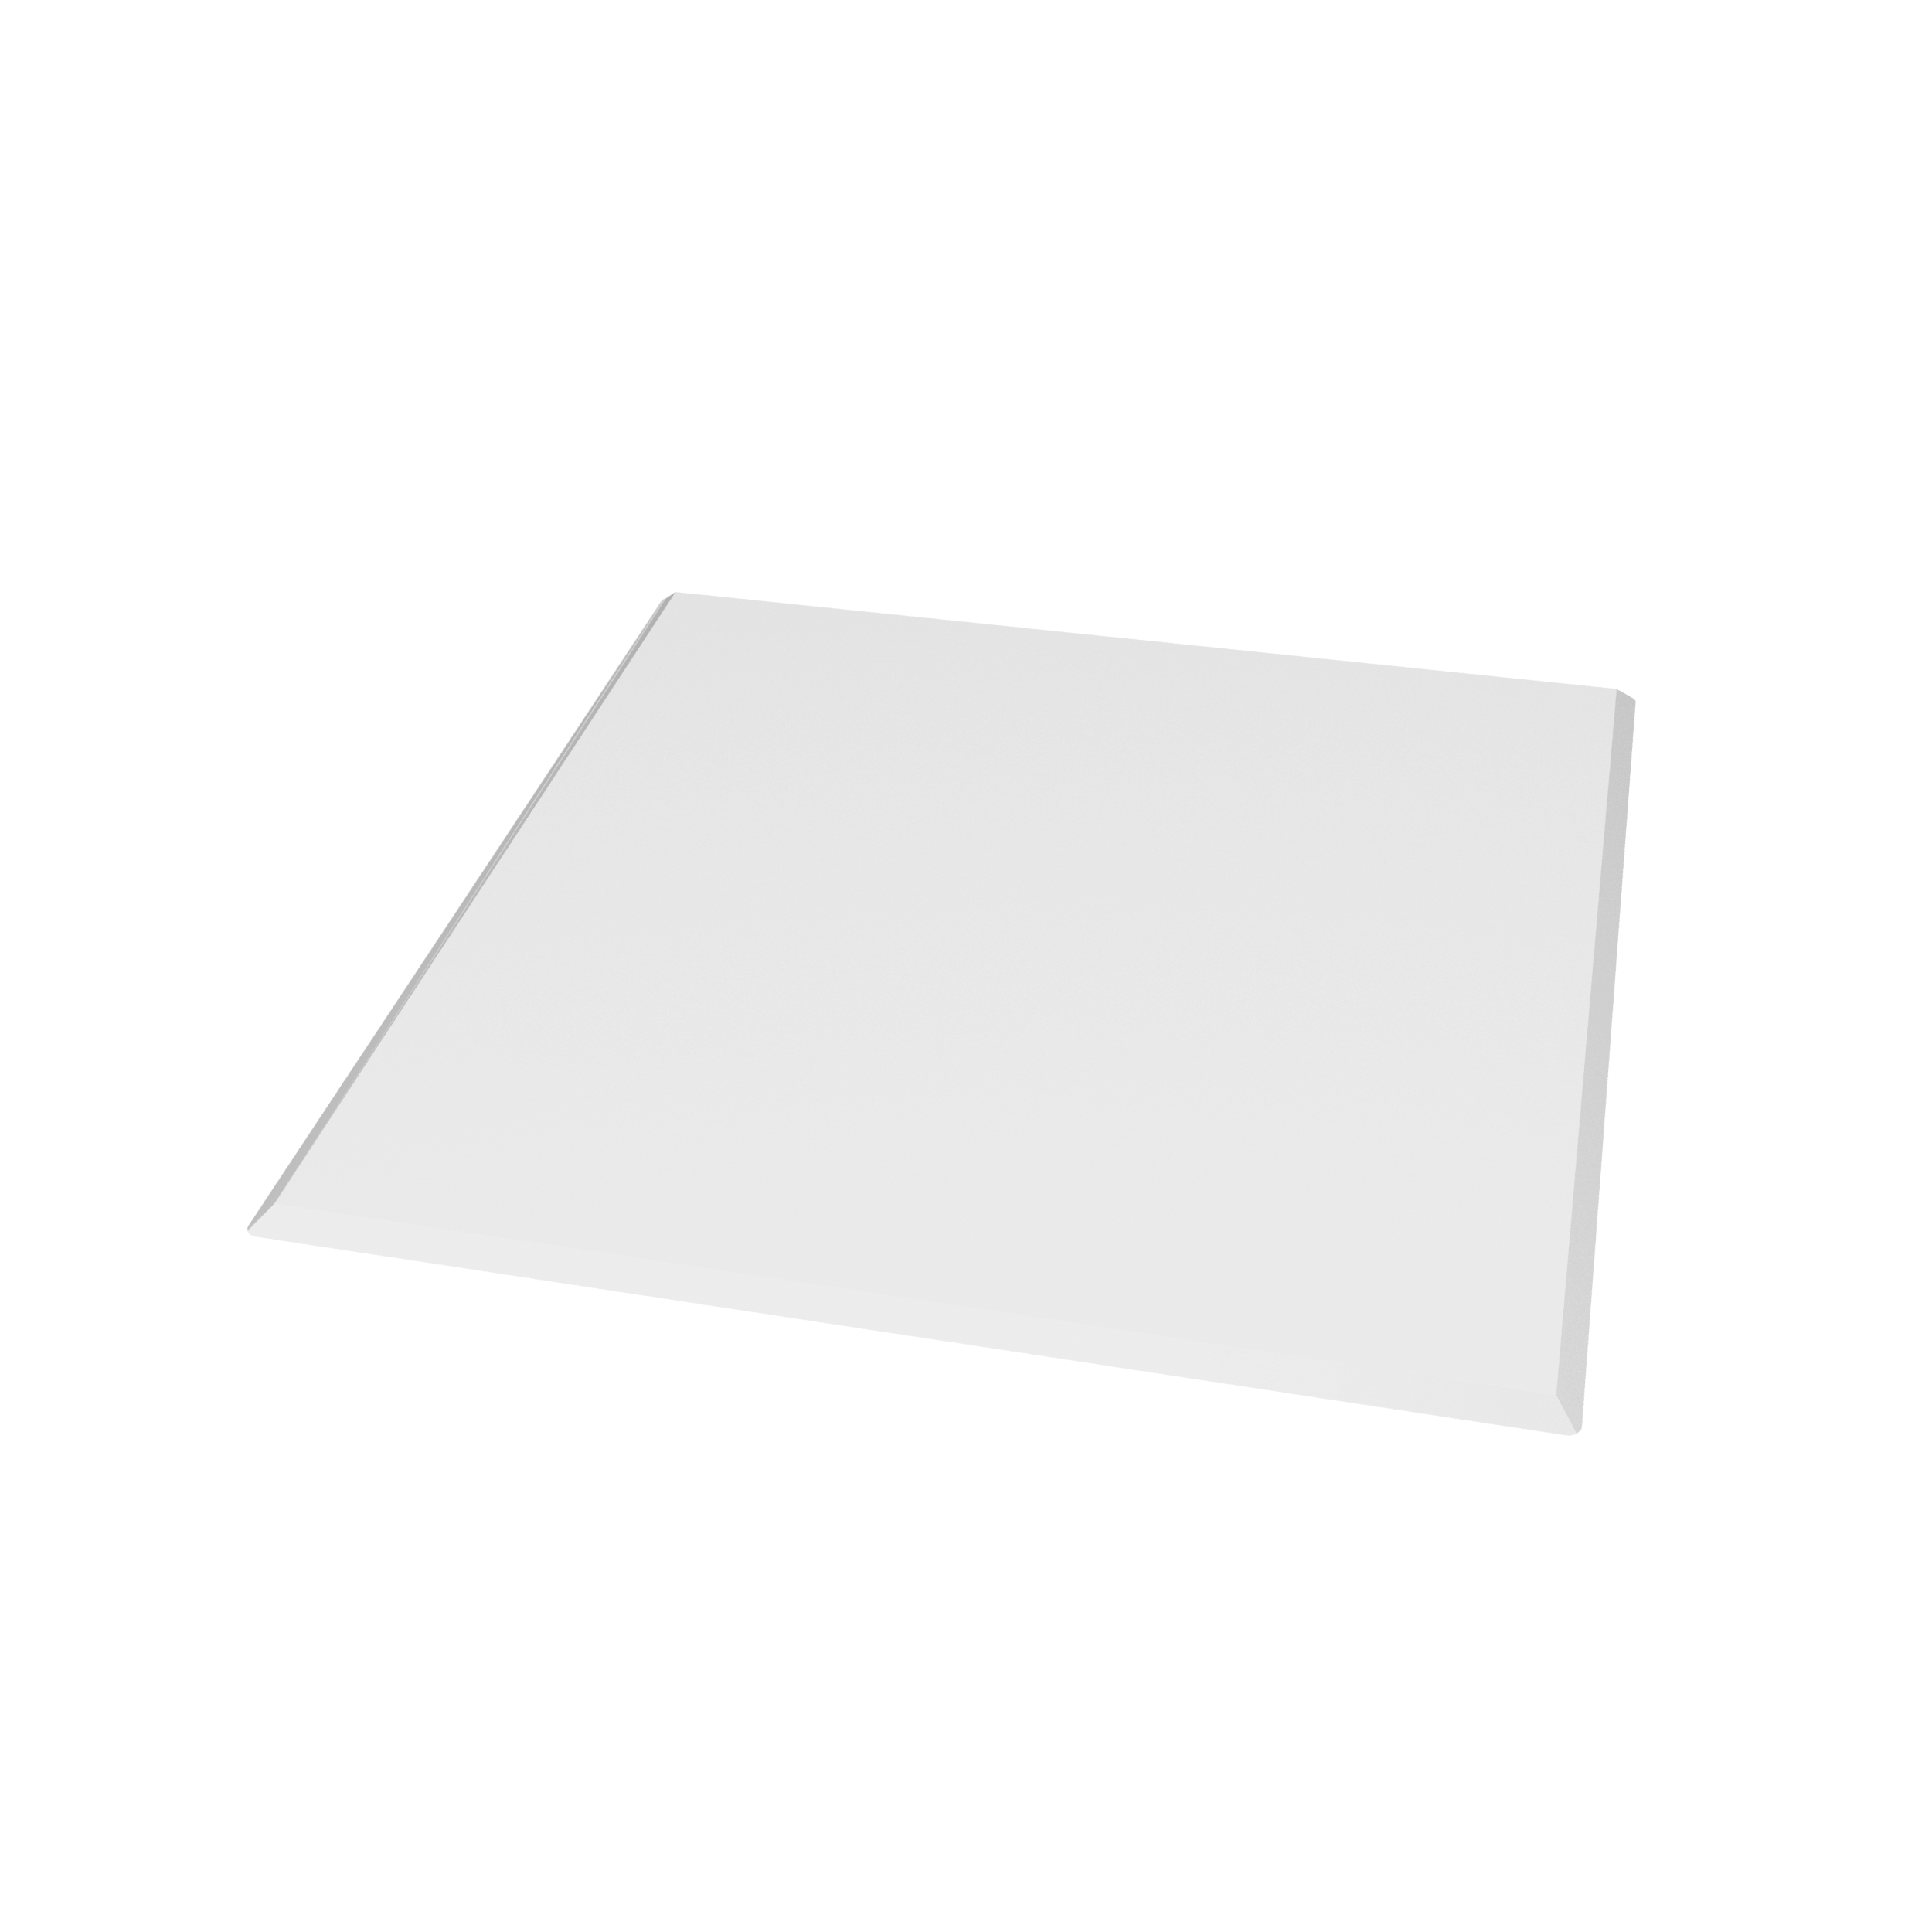 Valo Glasvorlegeplatte Quadrat 110 x 110 cm; glasklar; 8 mm; mit geschliffenen Kanten